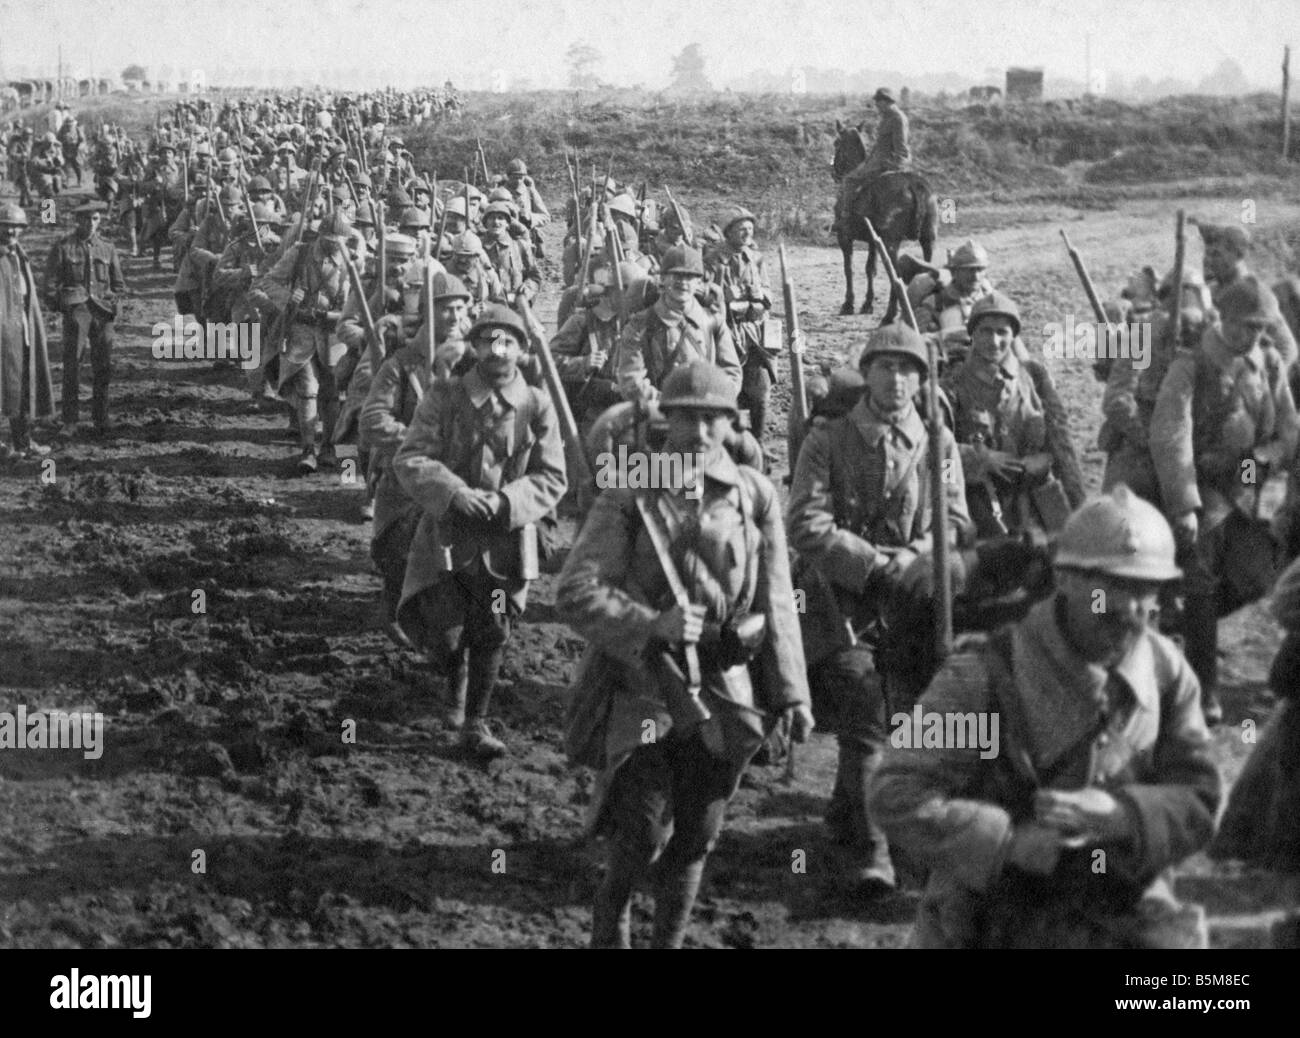 2 G55 F1 1916 64 WW1 französische Truppen zurück vom vorderen Geschichte Weltkrieg ein Frankreich Grabenkämpfe bei Verdun französische Truppen Rückkehr Stockfoto